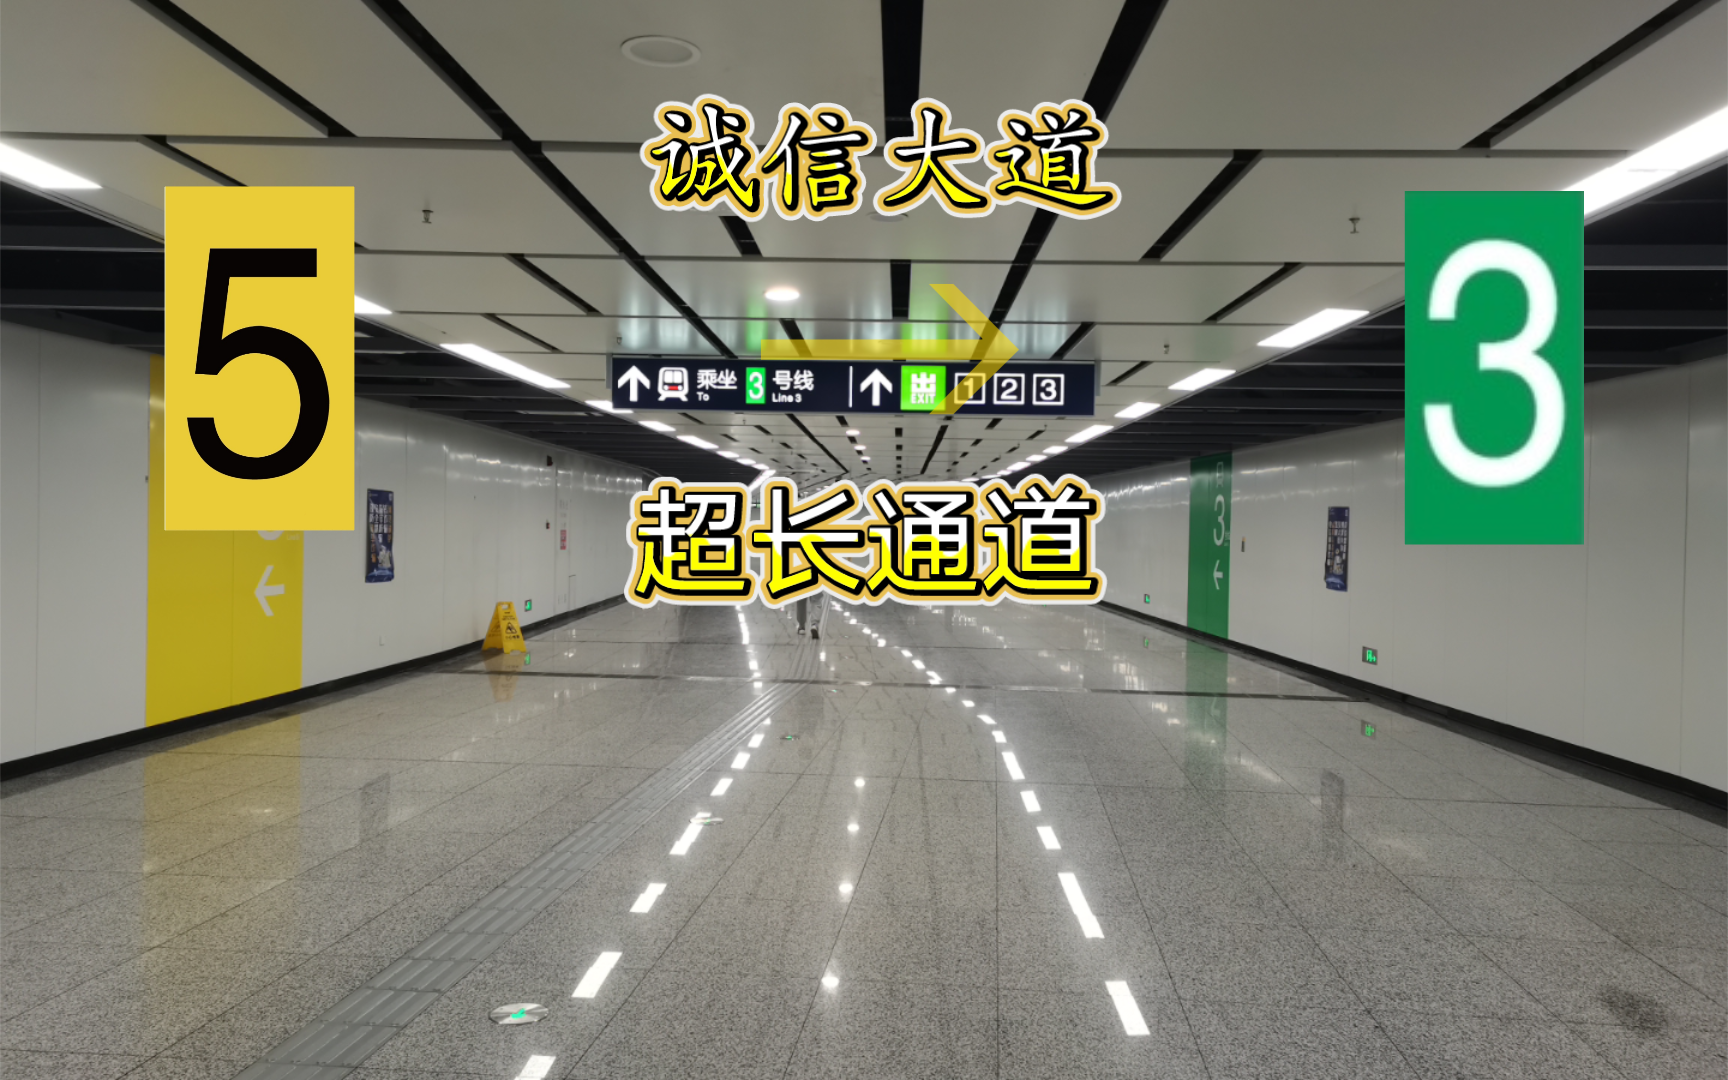 【南京地铁】｛无法节点  通道连接｝诚信大道站5→3换乘实录